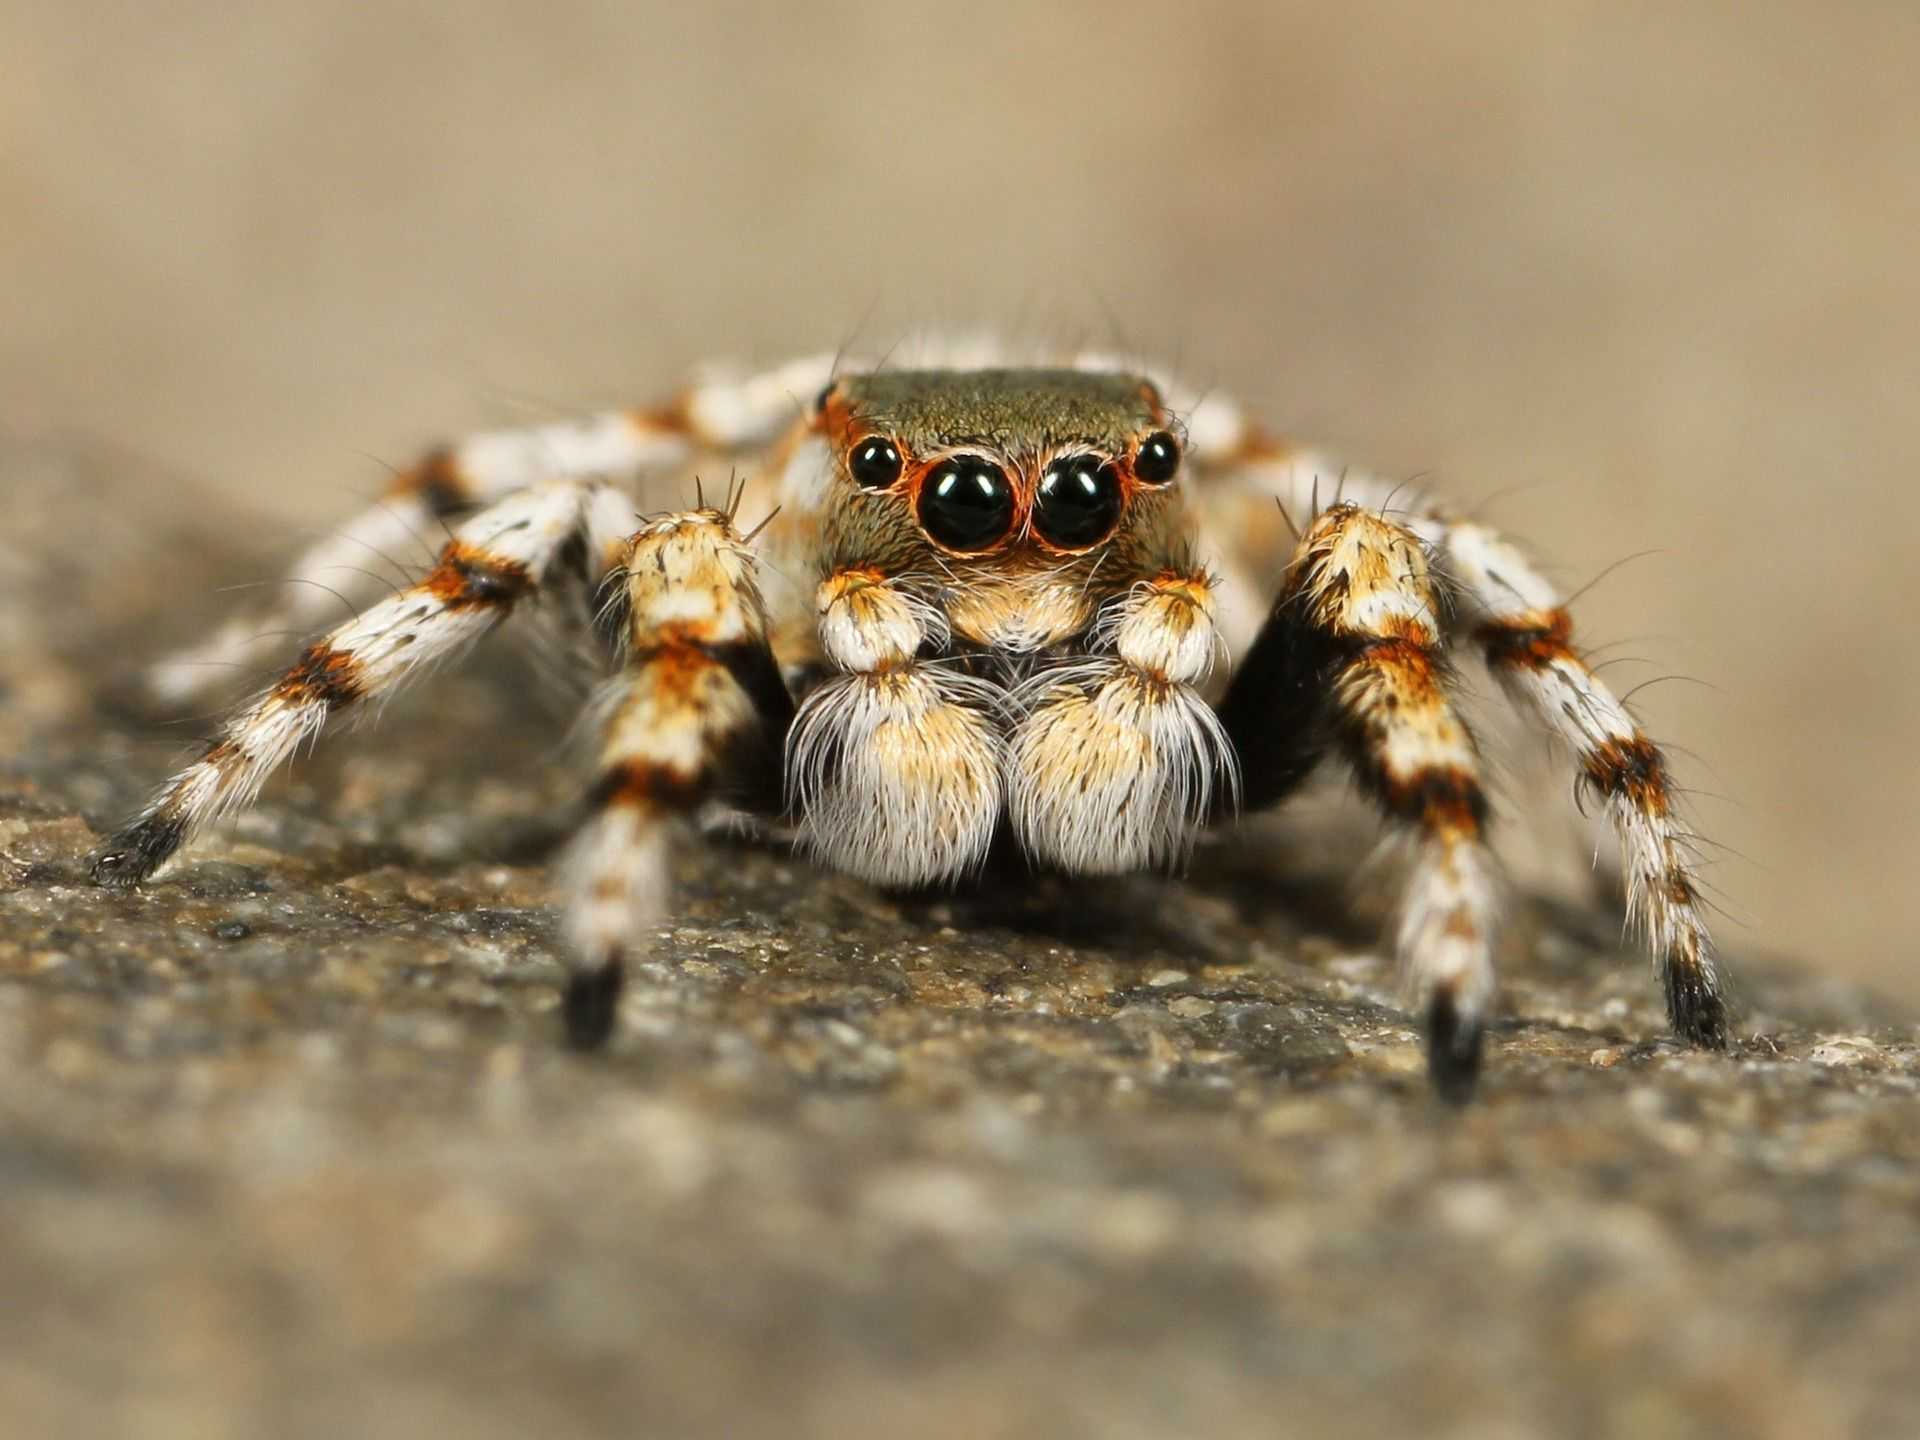 Интересные факты о тарантулах – это прекрасная возможность узнать больше о ядовитых пауках Как правило, тарантулы обитают в засушливых регионах Днем они